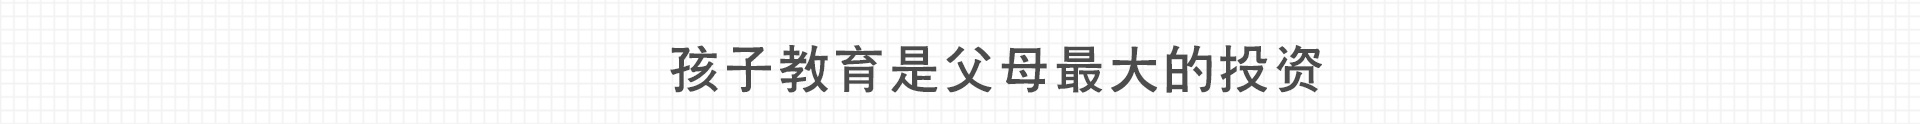 加盟网站zuizhong_11.jpg